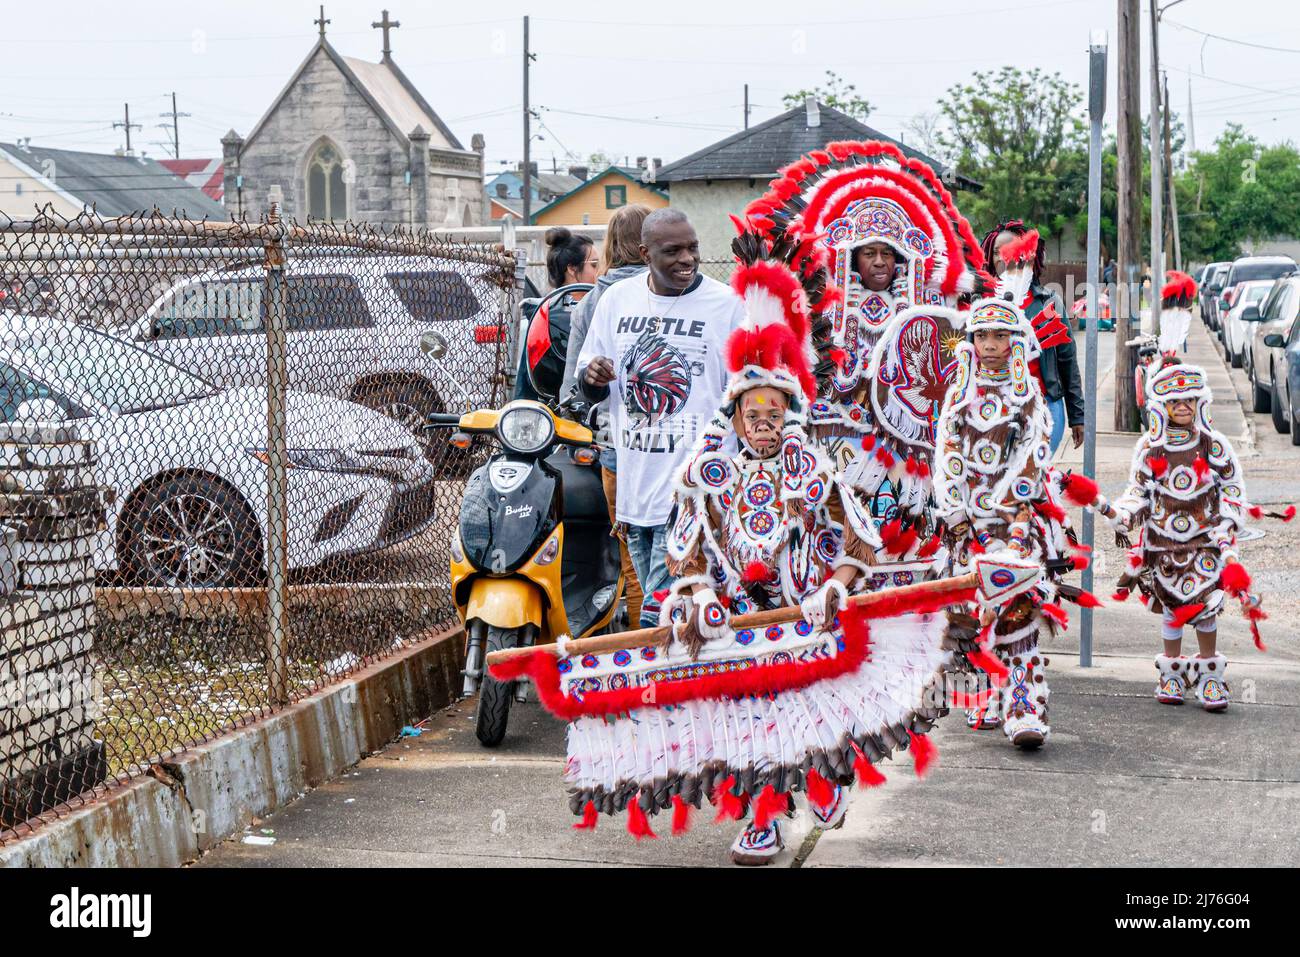 NEW ORLEANS, LA, USA - 17. MÄRZ 2019: Kostümierte junge und alte Mardi Gras Indianer laufen am St. Joseph Friedhof vorbei zur LaSalle Street Parade Route Stockfoto